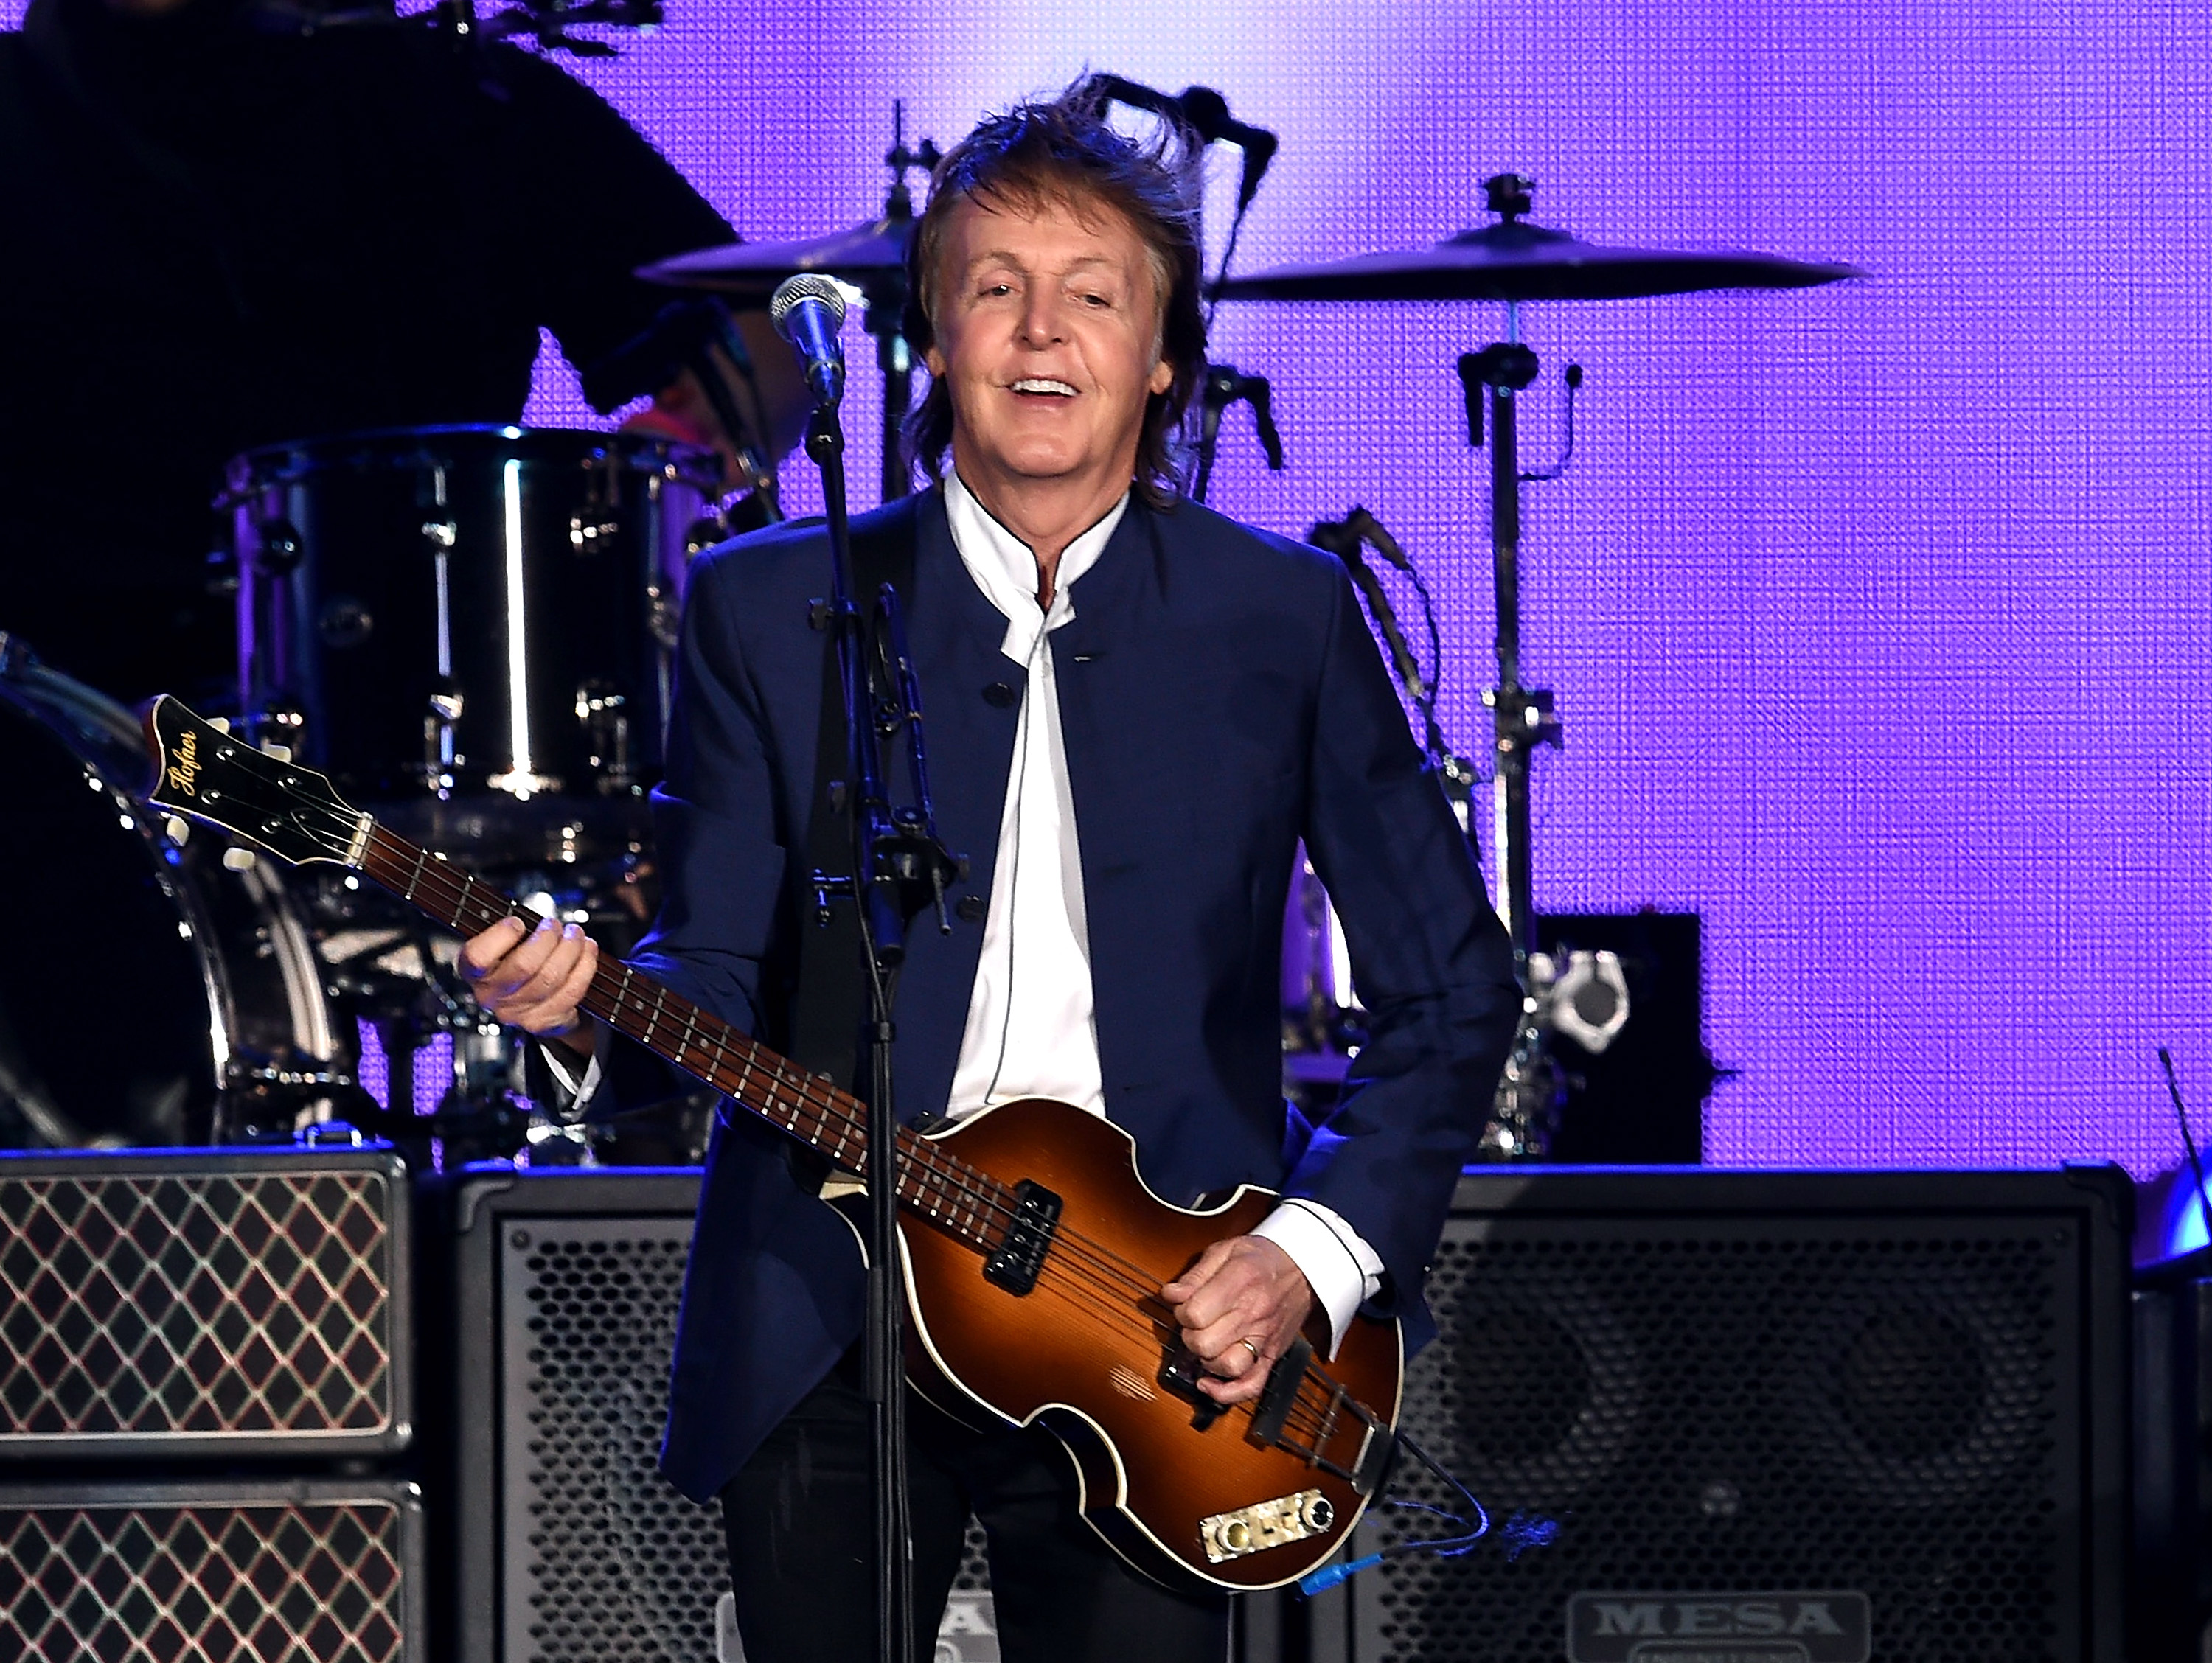 Paul McCartney performing onstage in California